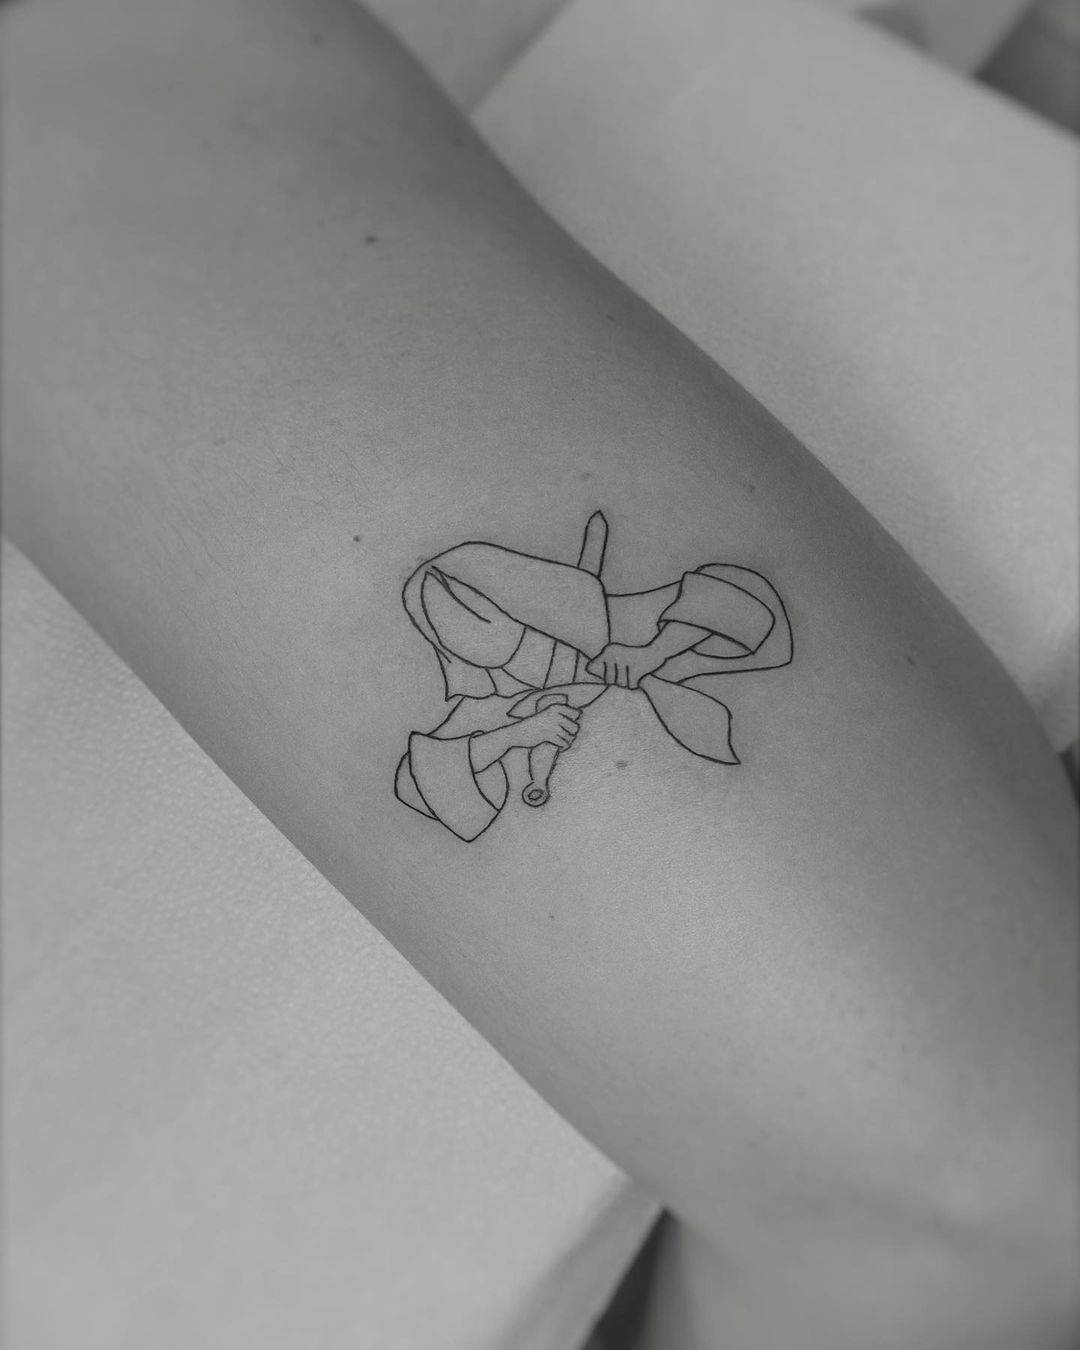 Tiny tattoo by